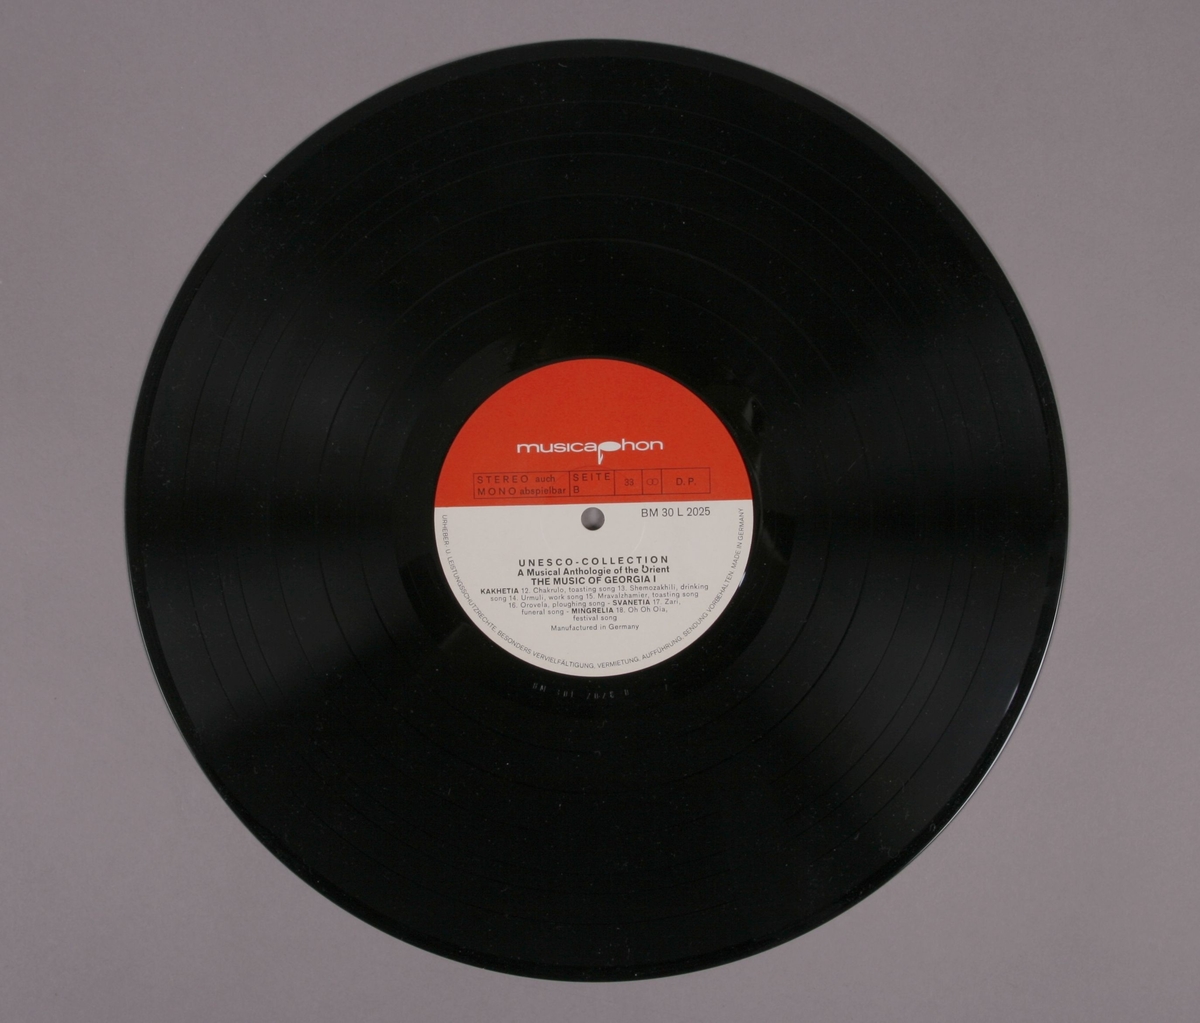 Grammofonplate i svart vinyl og plateomslag i papp. Plateomslaget kan foldes ut, og inneholder et hefte som beskriver både georgisk historie og musikk, samt flere fotografier. Plata ligger i en papirlomme med plastvindu.